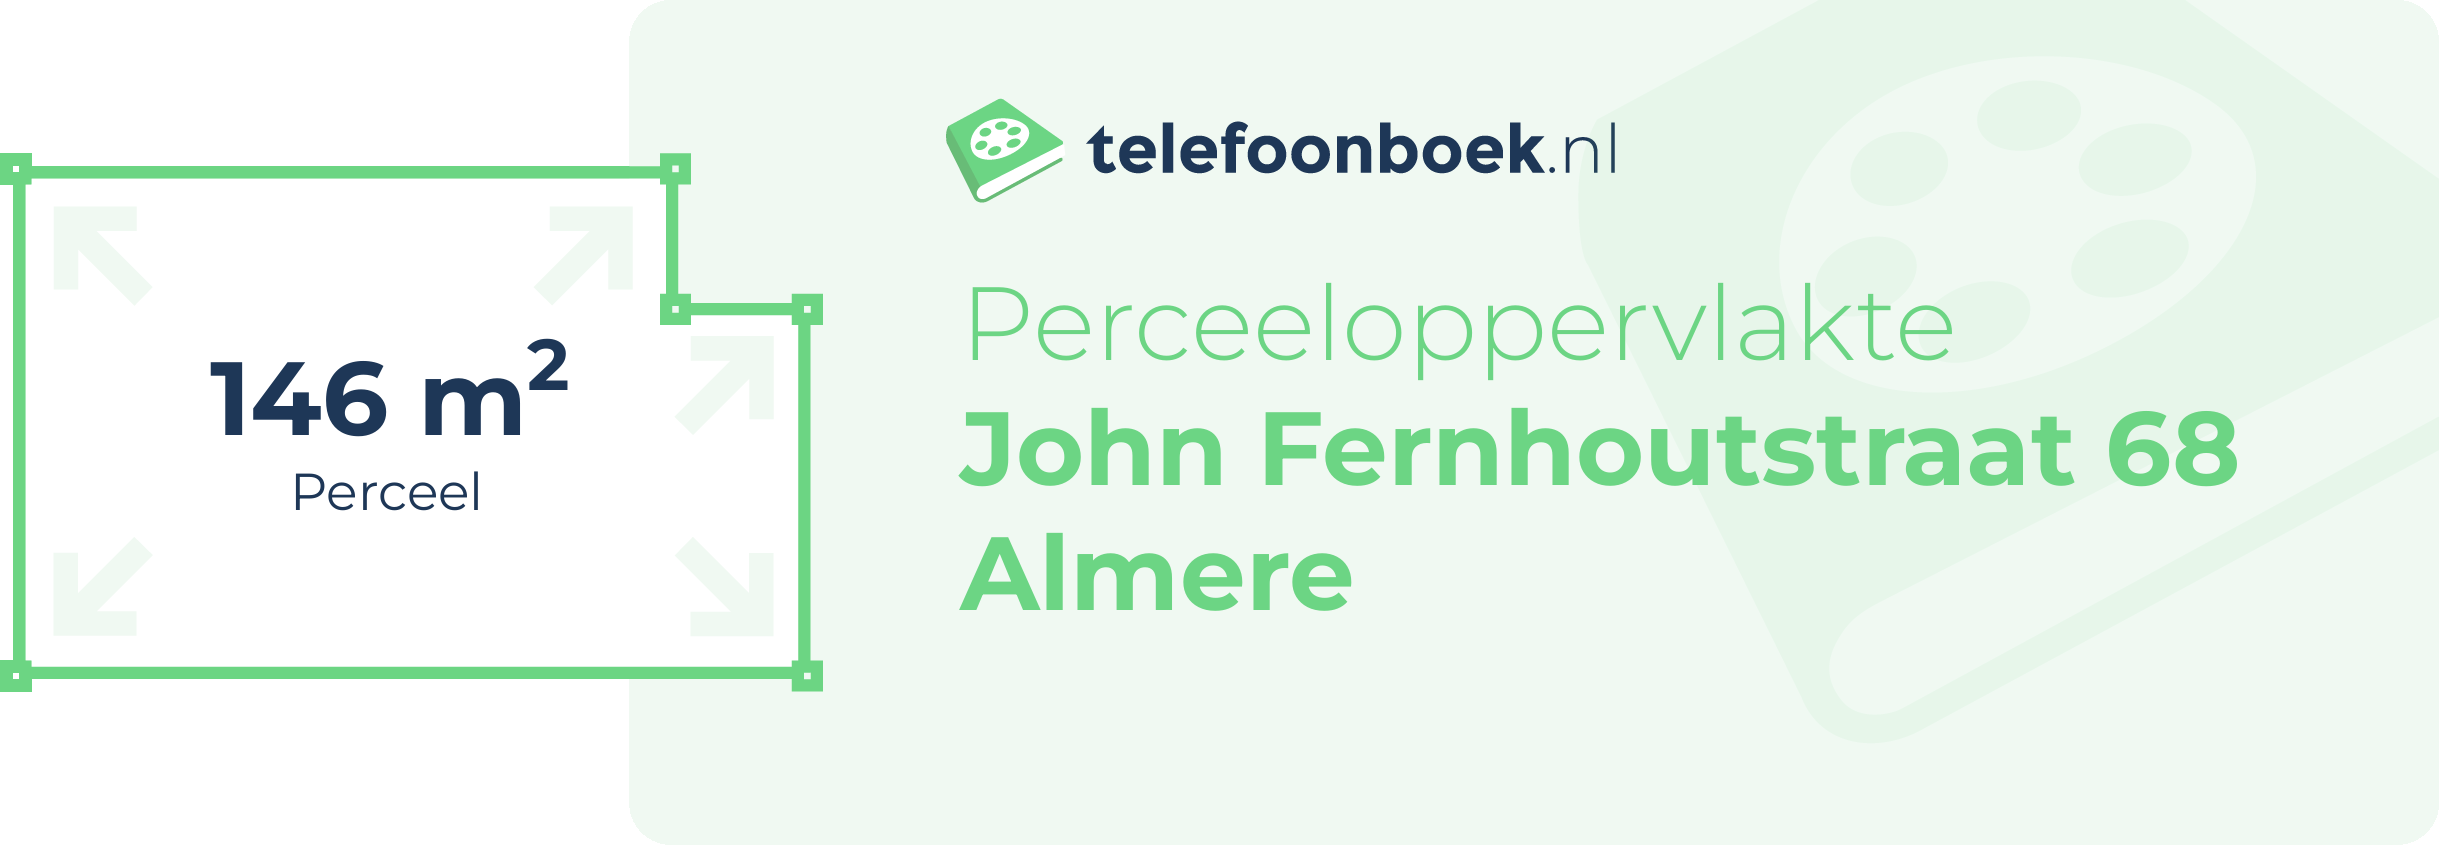 Perceeloppervlakte John Fernhoutstraat 68 Almere